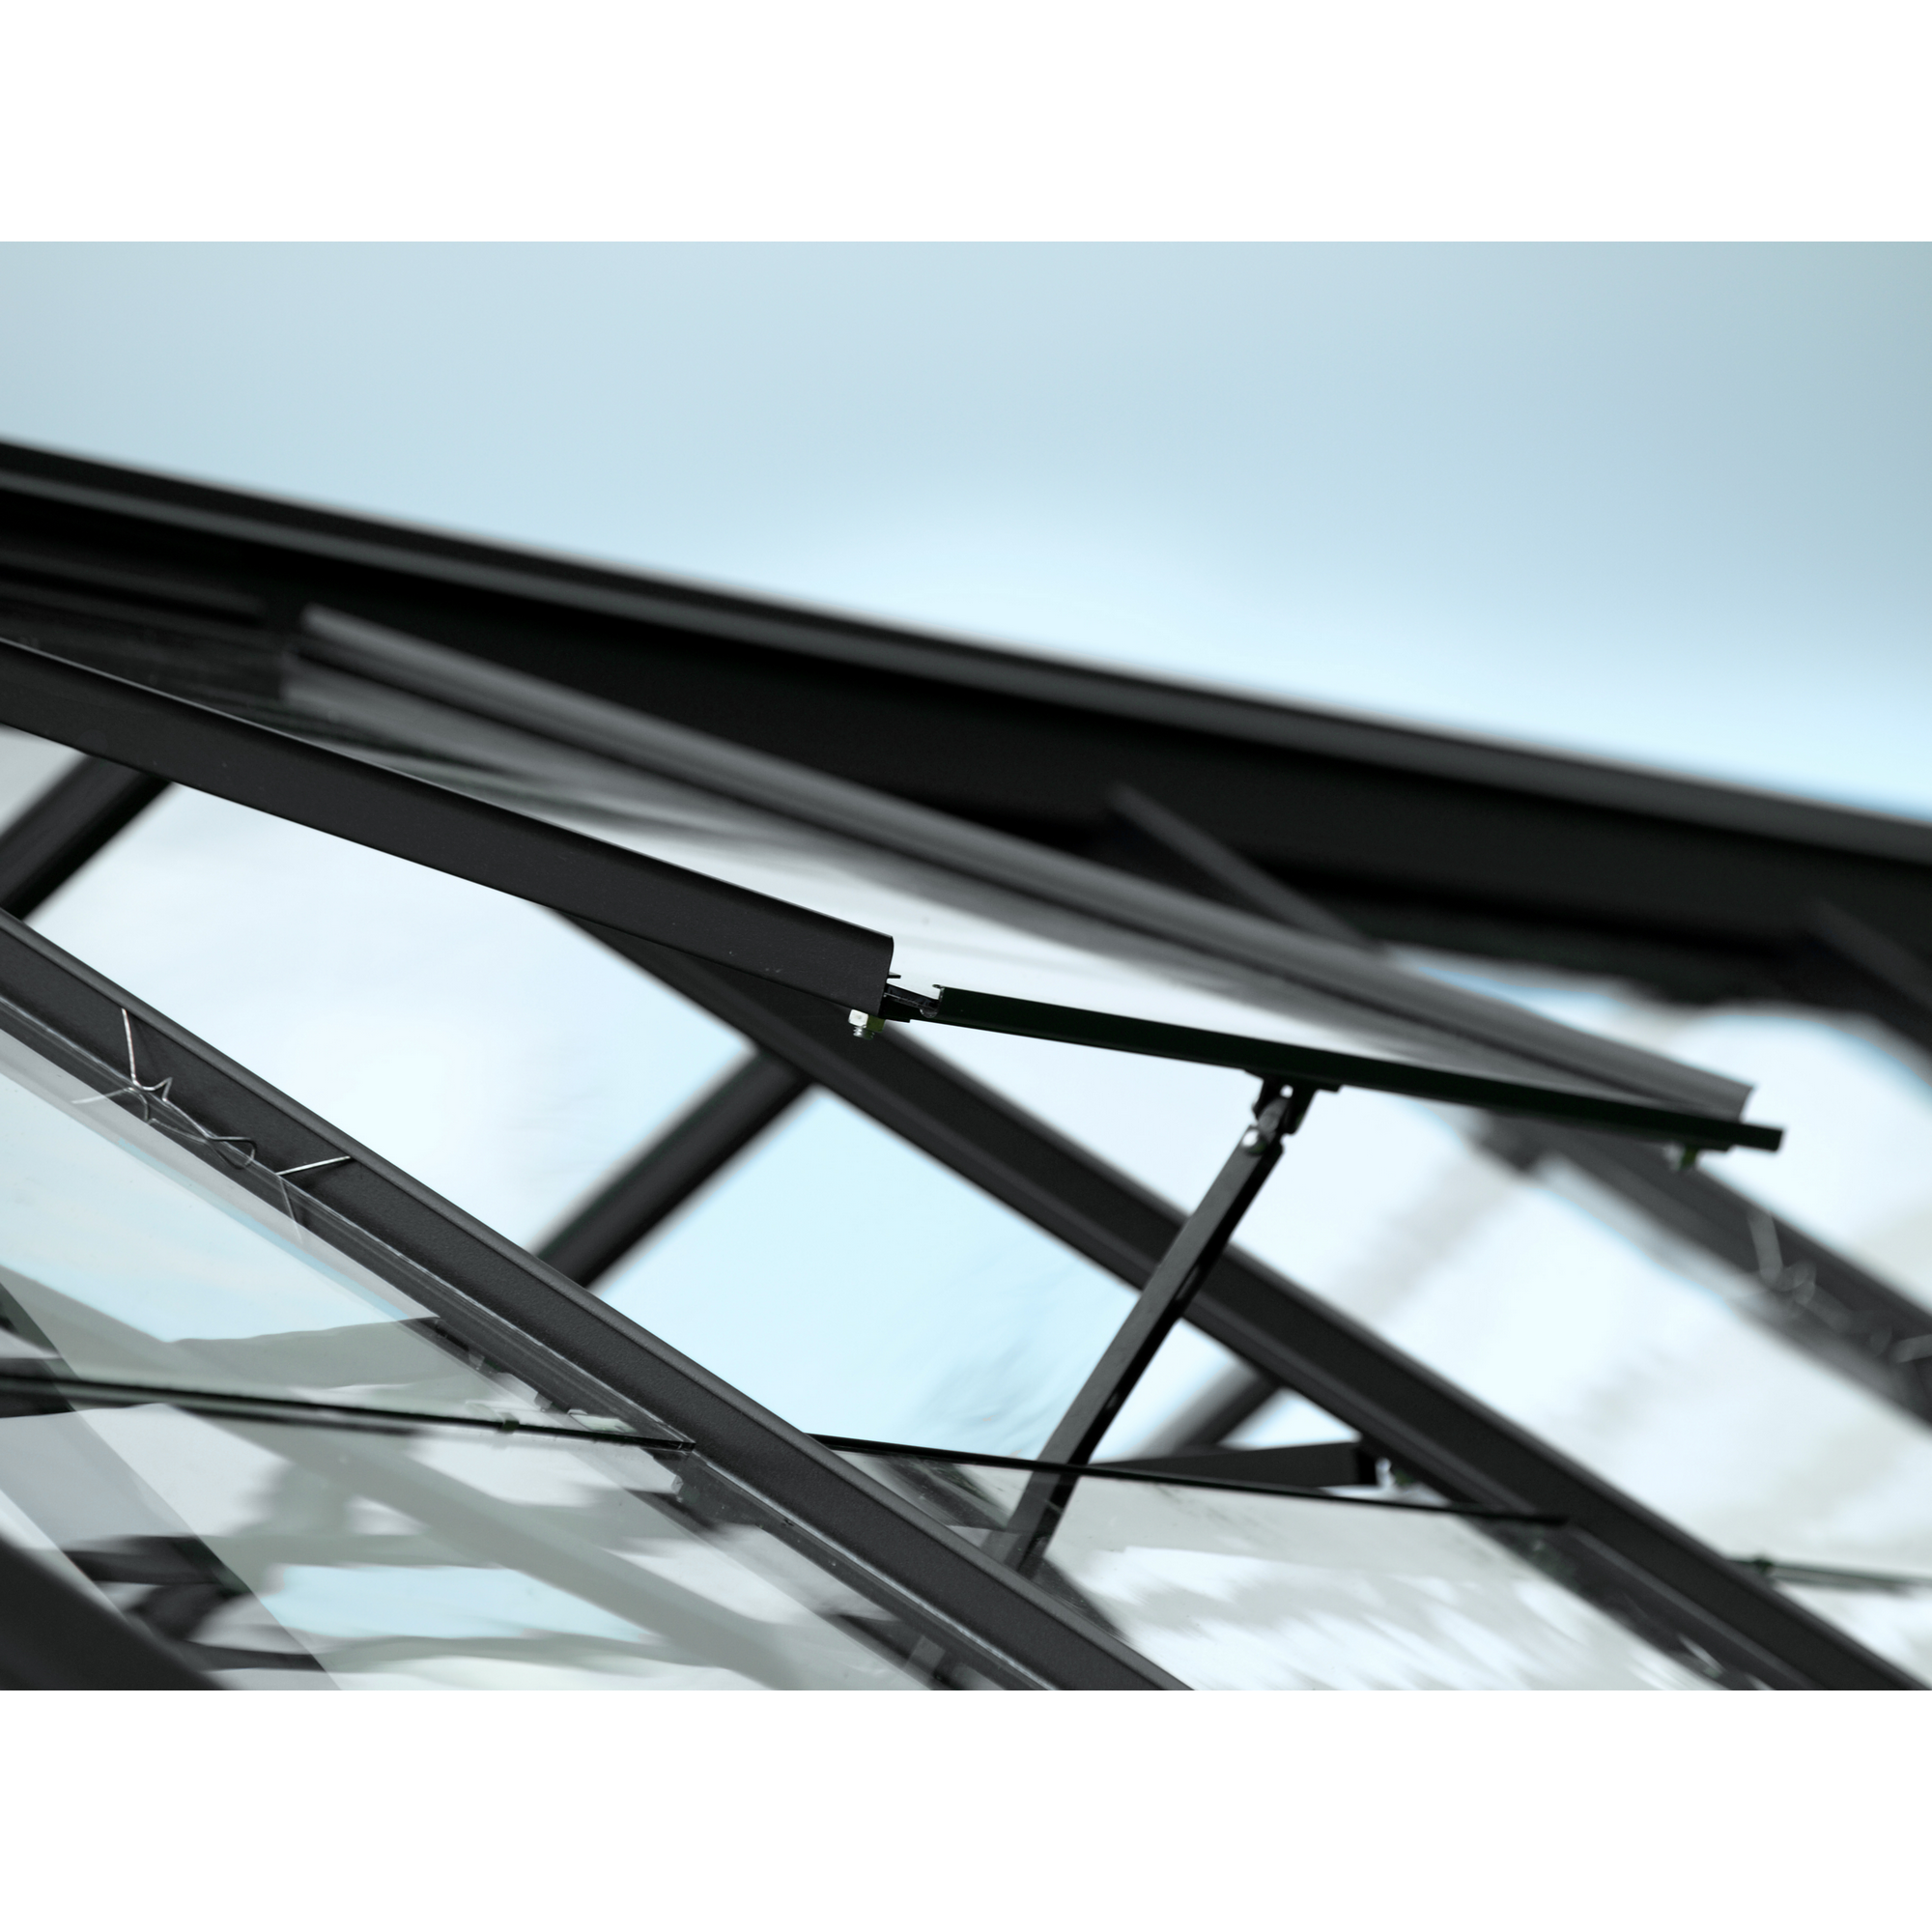 Dachfenster für Gewächshäuser, Aluminium, schwarz 62 x 55 cm + product picture